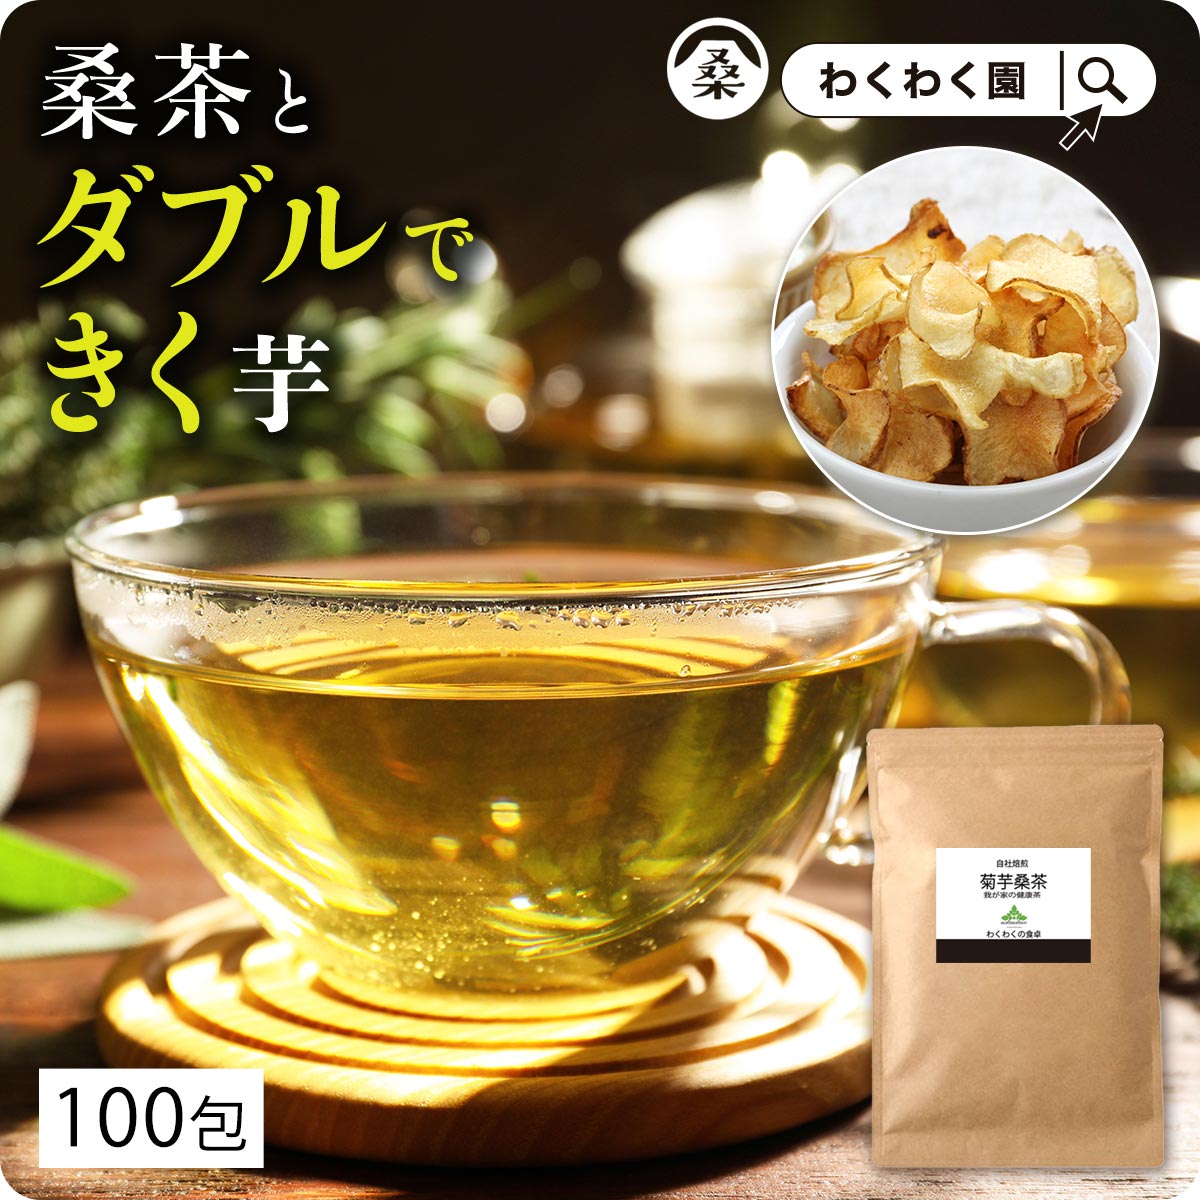 わくわく園 菊芋桑茶 ティーバッグ2g 100包 × 1袋 健康茶の商品画像